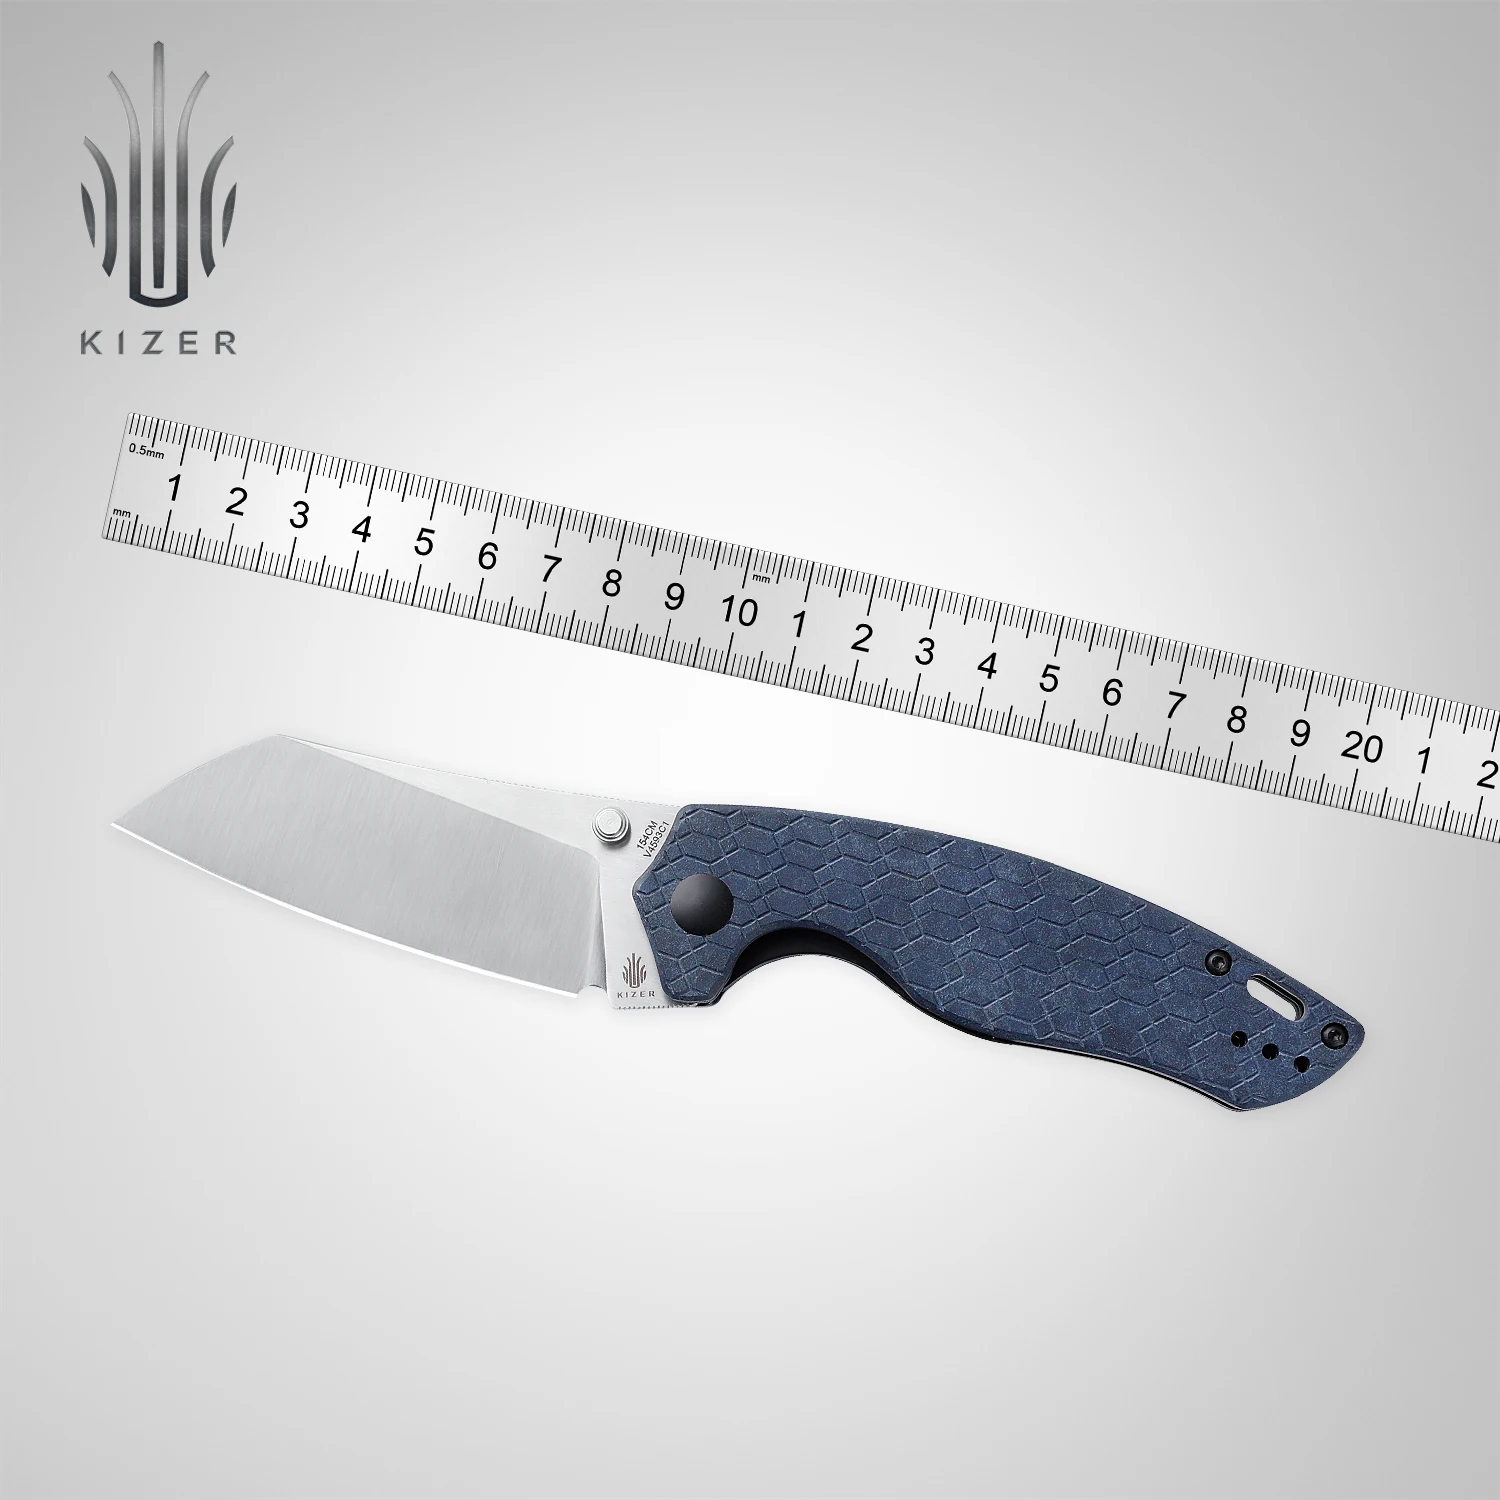 Kizer Pocket Knife V4593C1/V4593C2 Towser K Blue Richlite or Red Micarta 154CM Steel Outdoor Folding Knife